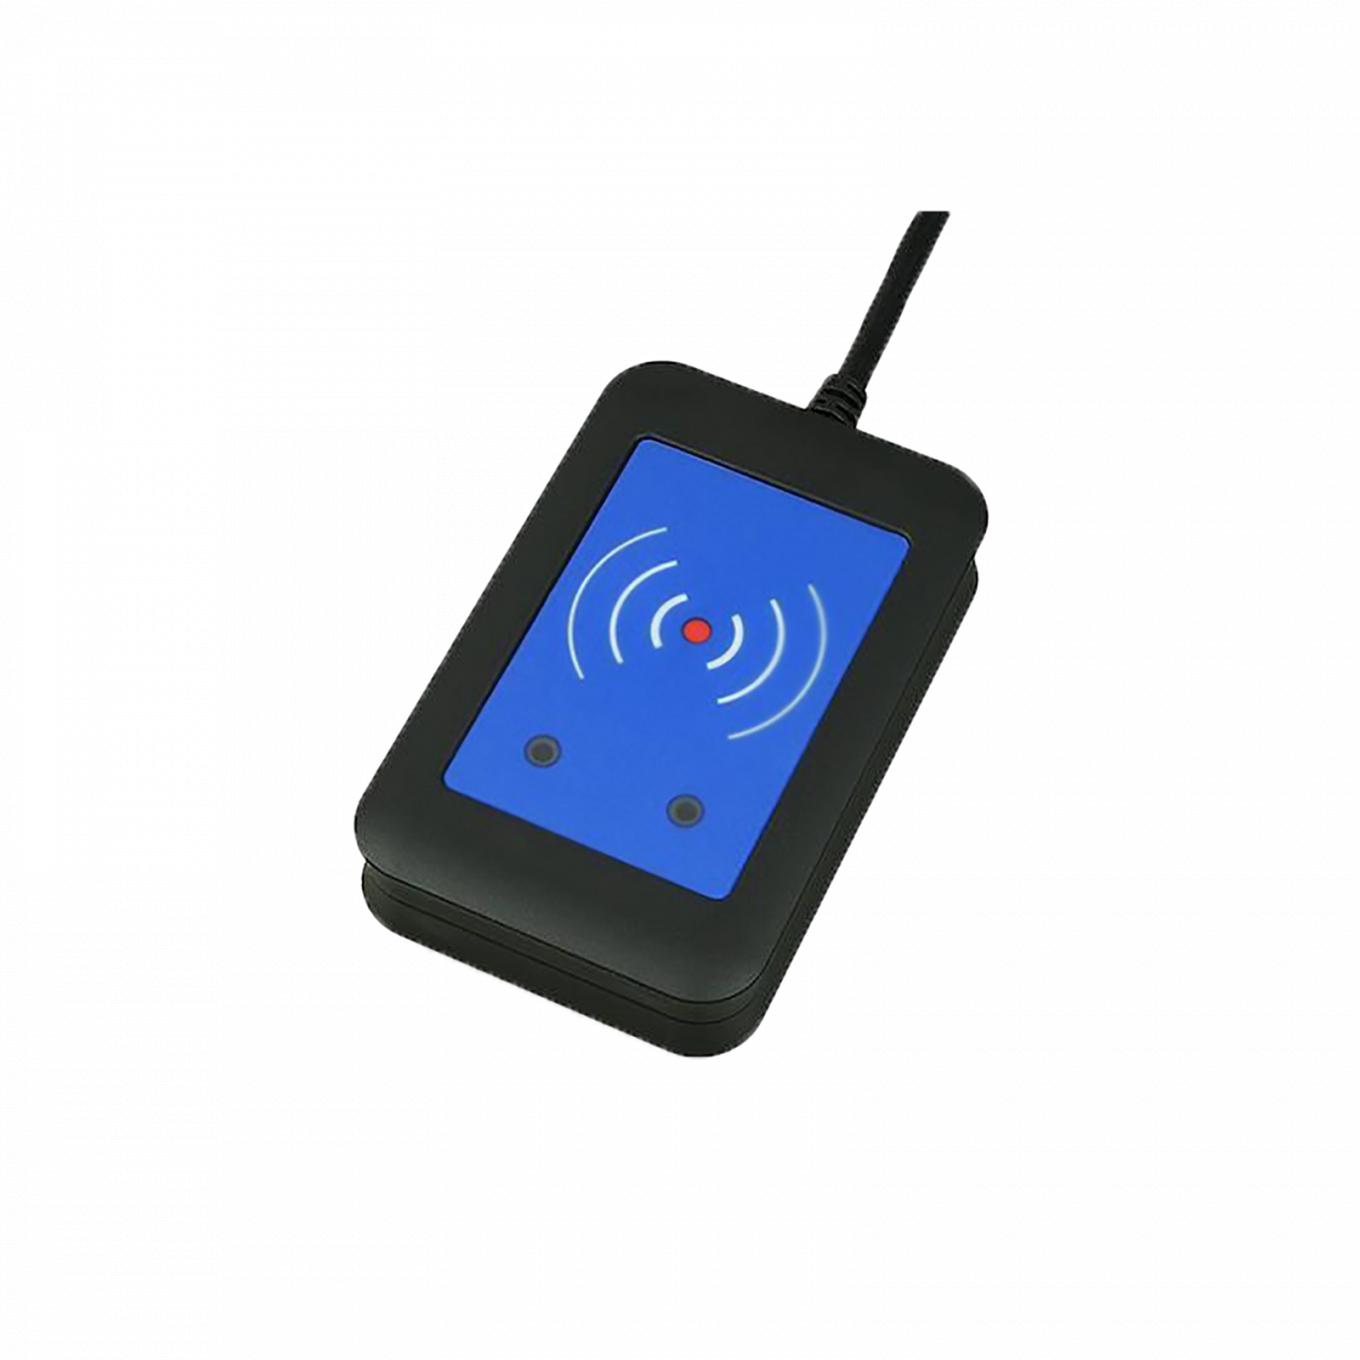 External RFID Secured Reader 13,56 MHz + 125 kHz, interfaz USB, visto desde el frente